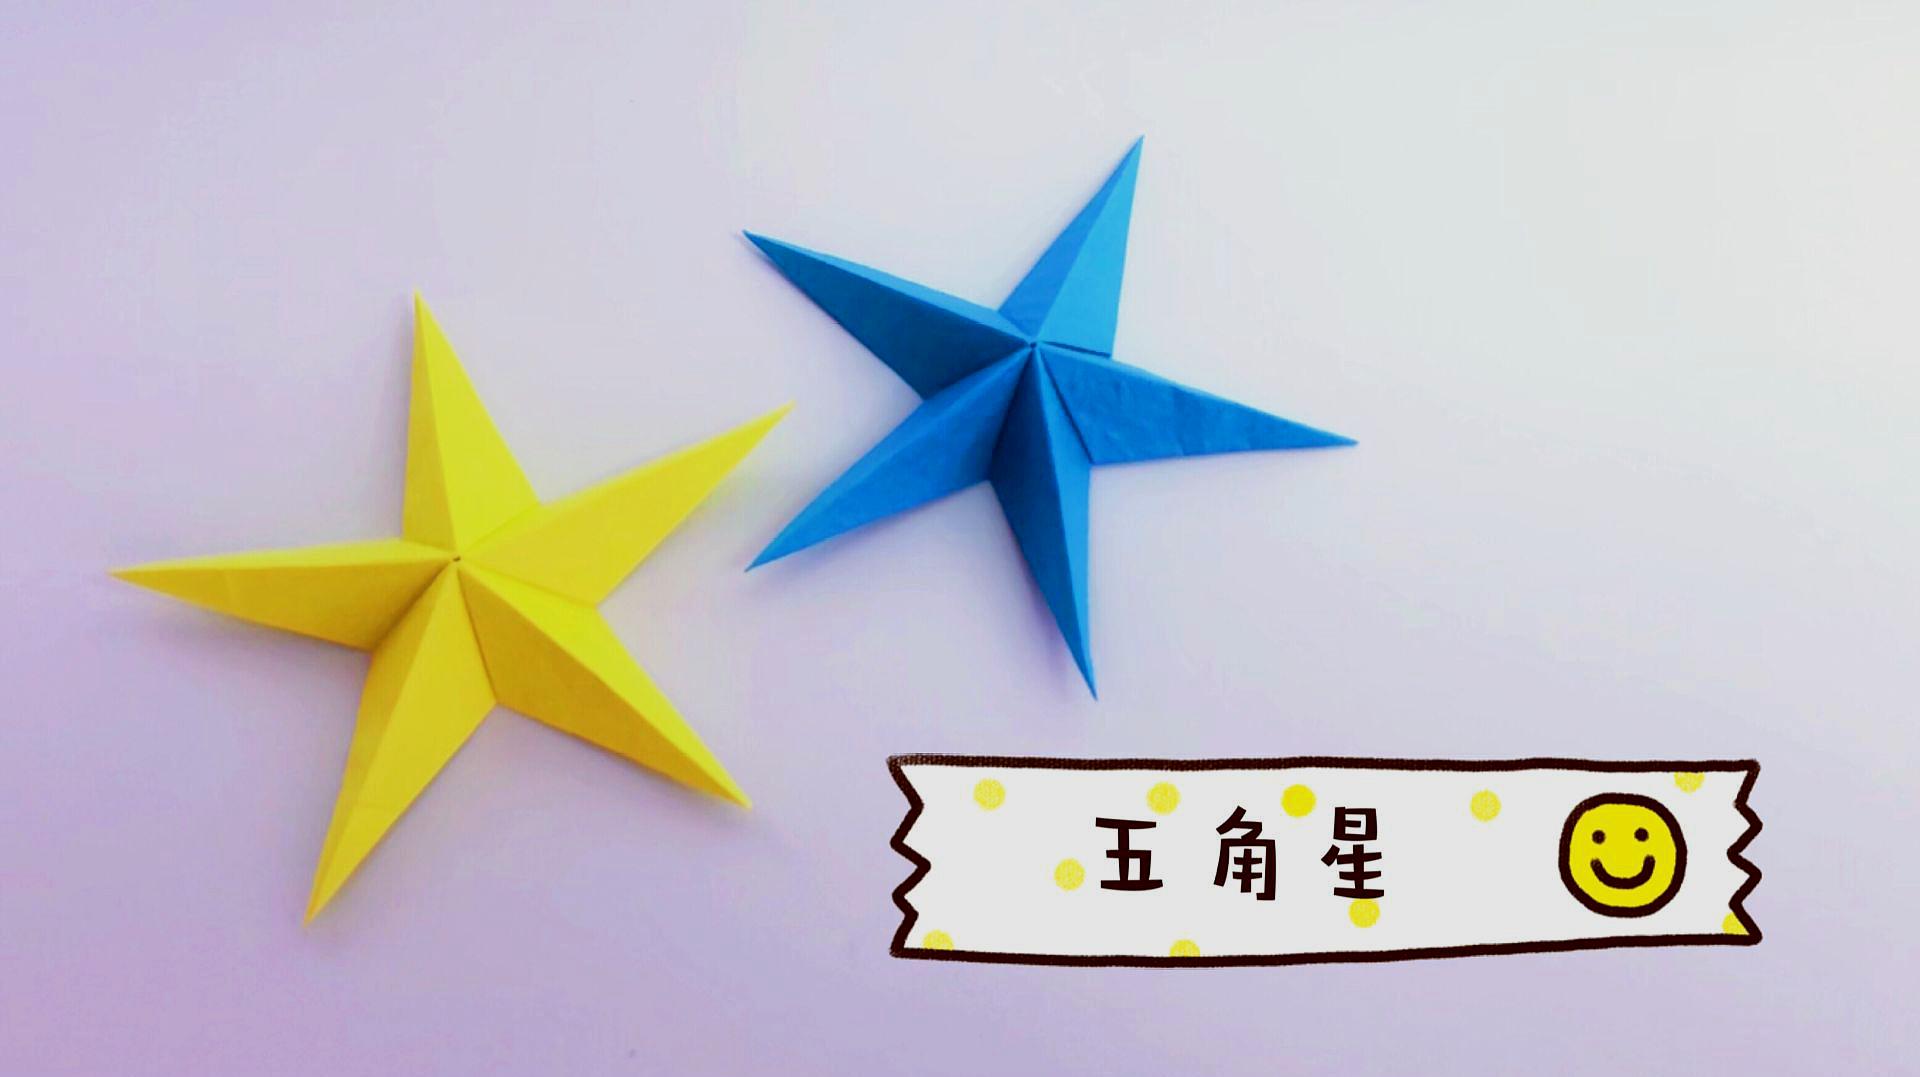 折纸教程:不用胶水折出立体五角星,赶快收藏,国庆节用得上